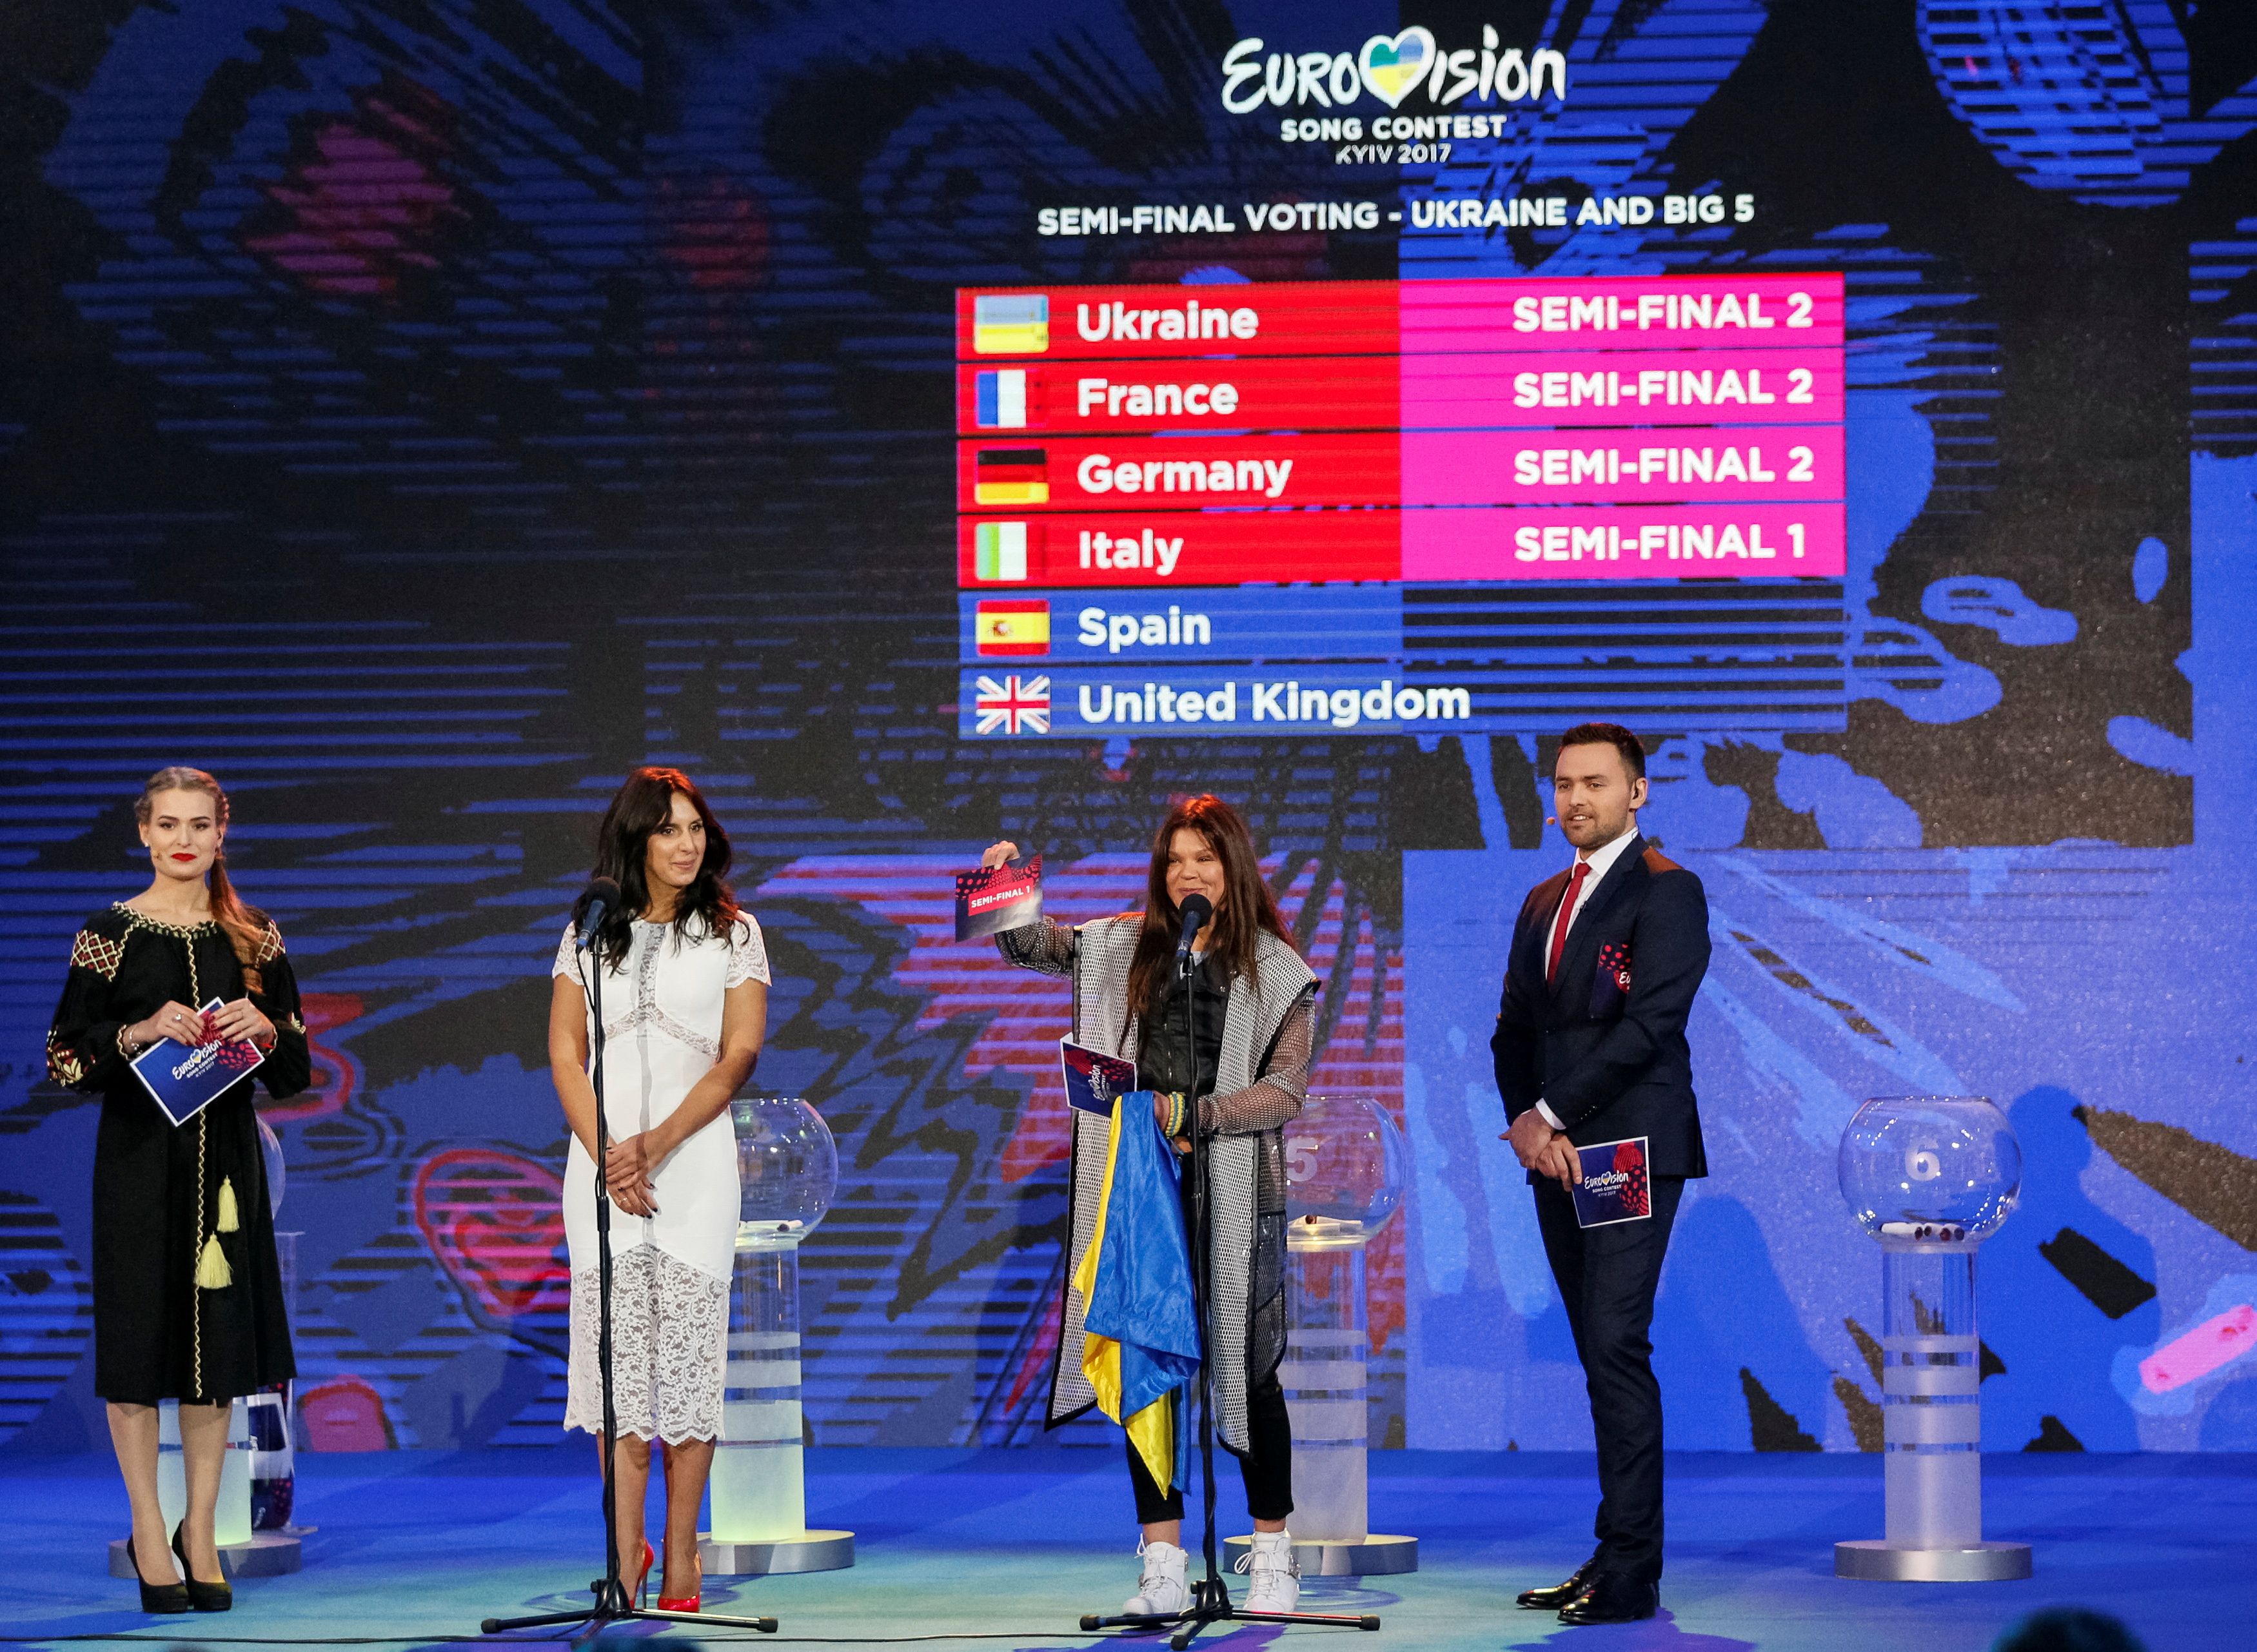 La cantante tártara de Crimea Jamaladinova y la cantante ucraniana Lyzhychko asisten al sorteo de las semifinales del Festival de la Canción de Eurovisión 2017 en Kiev